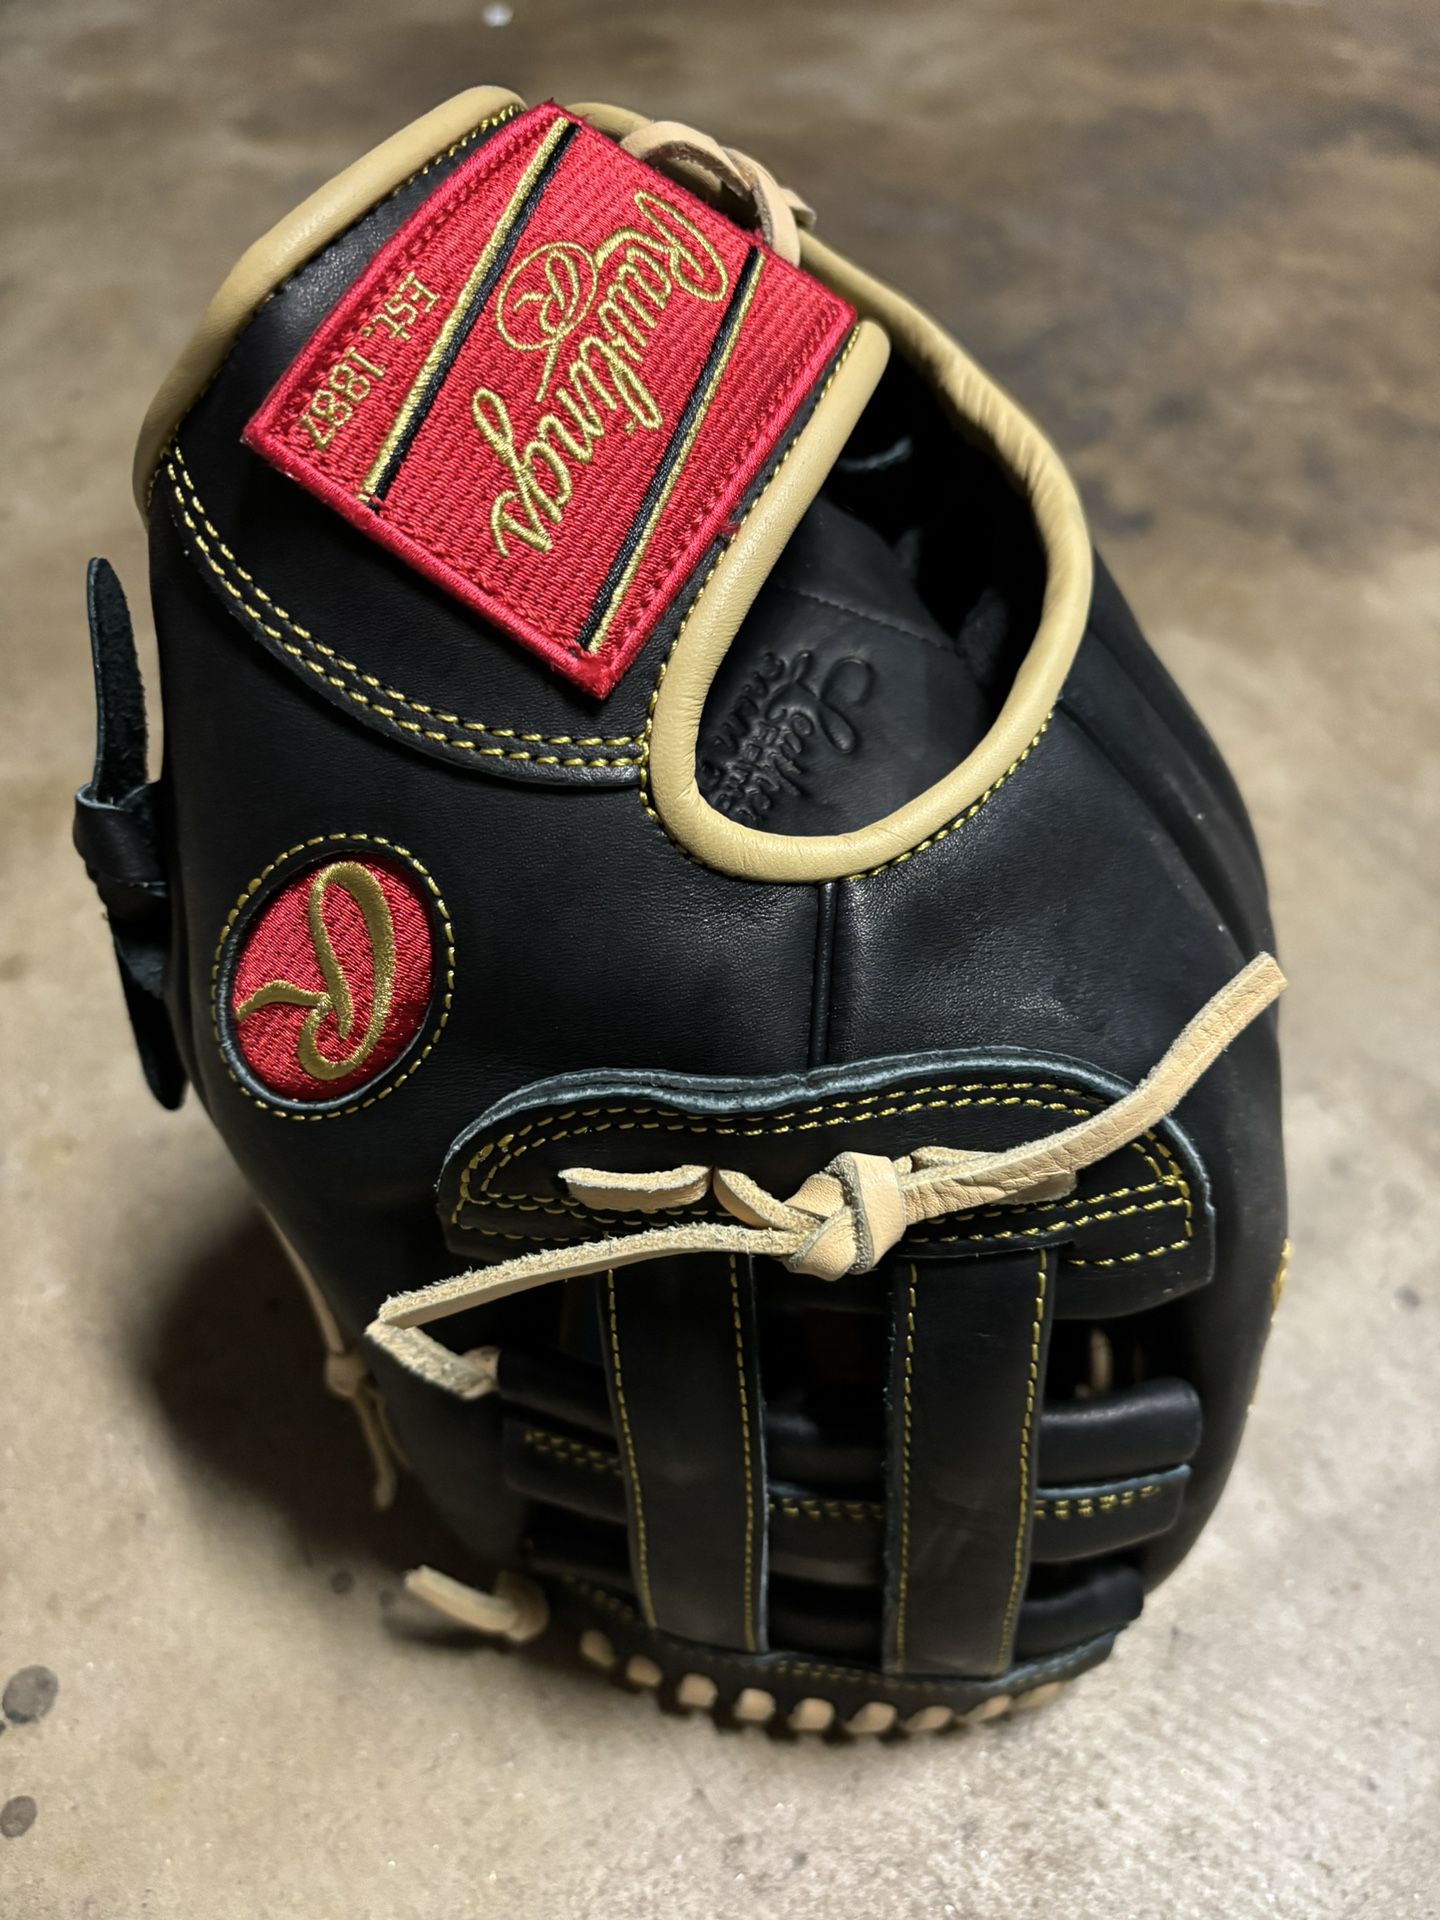 Rawlings Select Pro 12 1/2 Baseball Glove. 